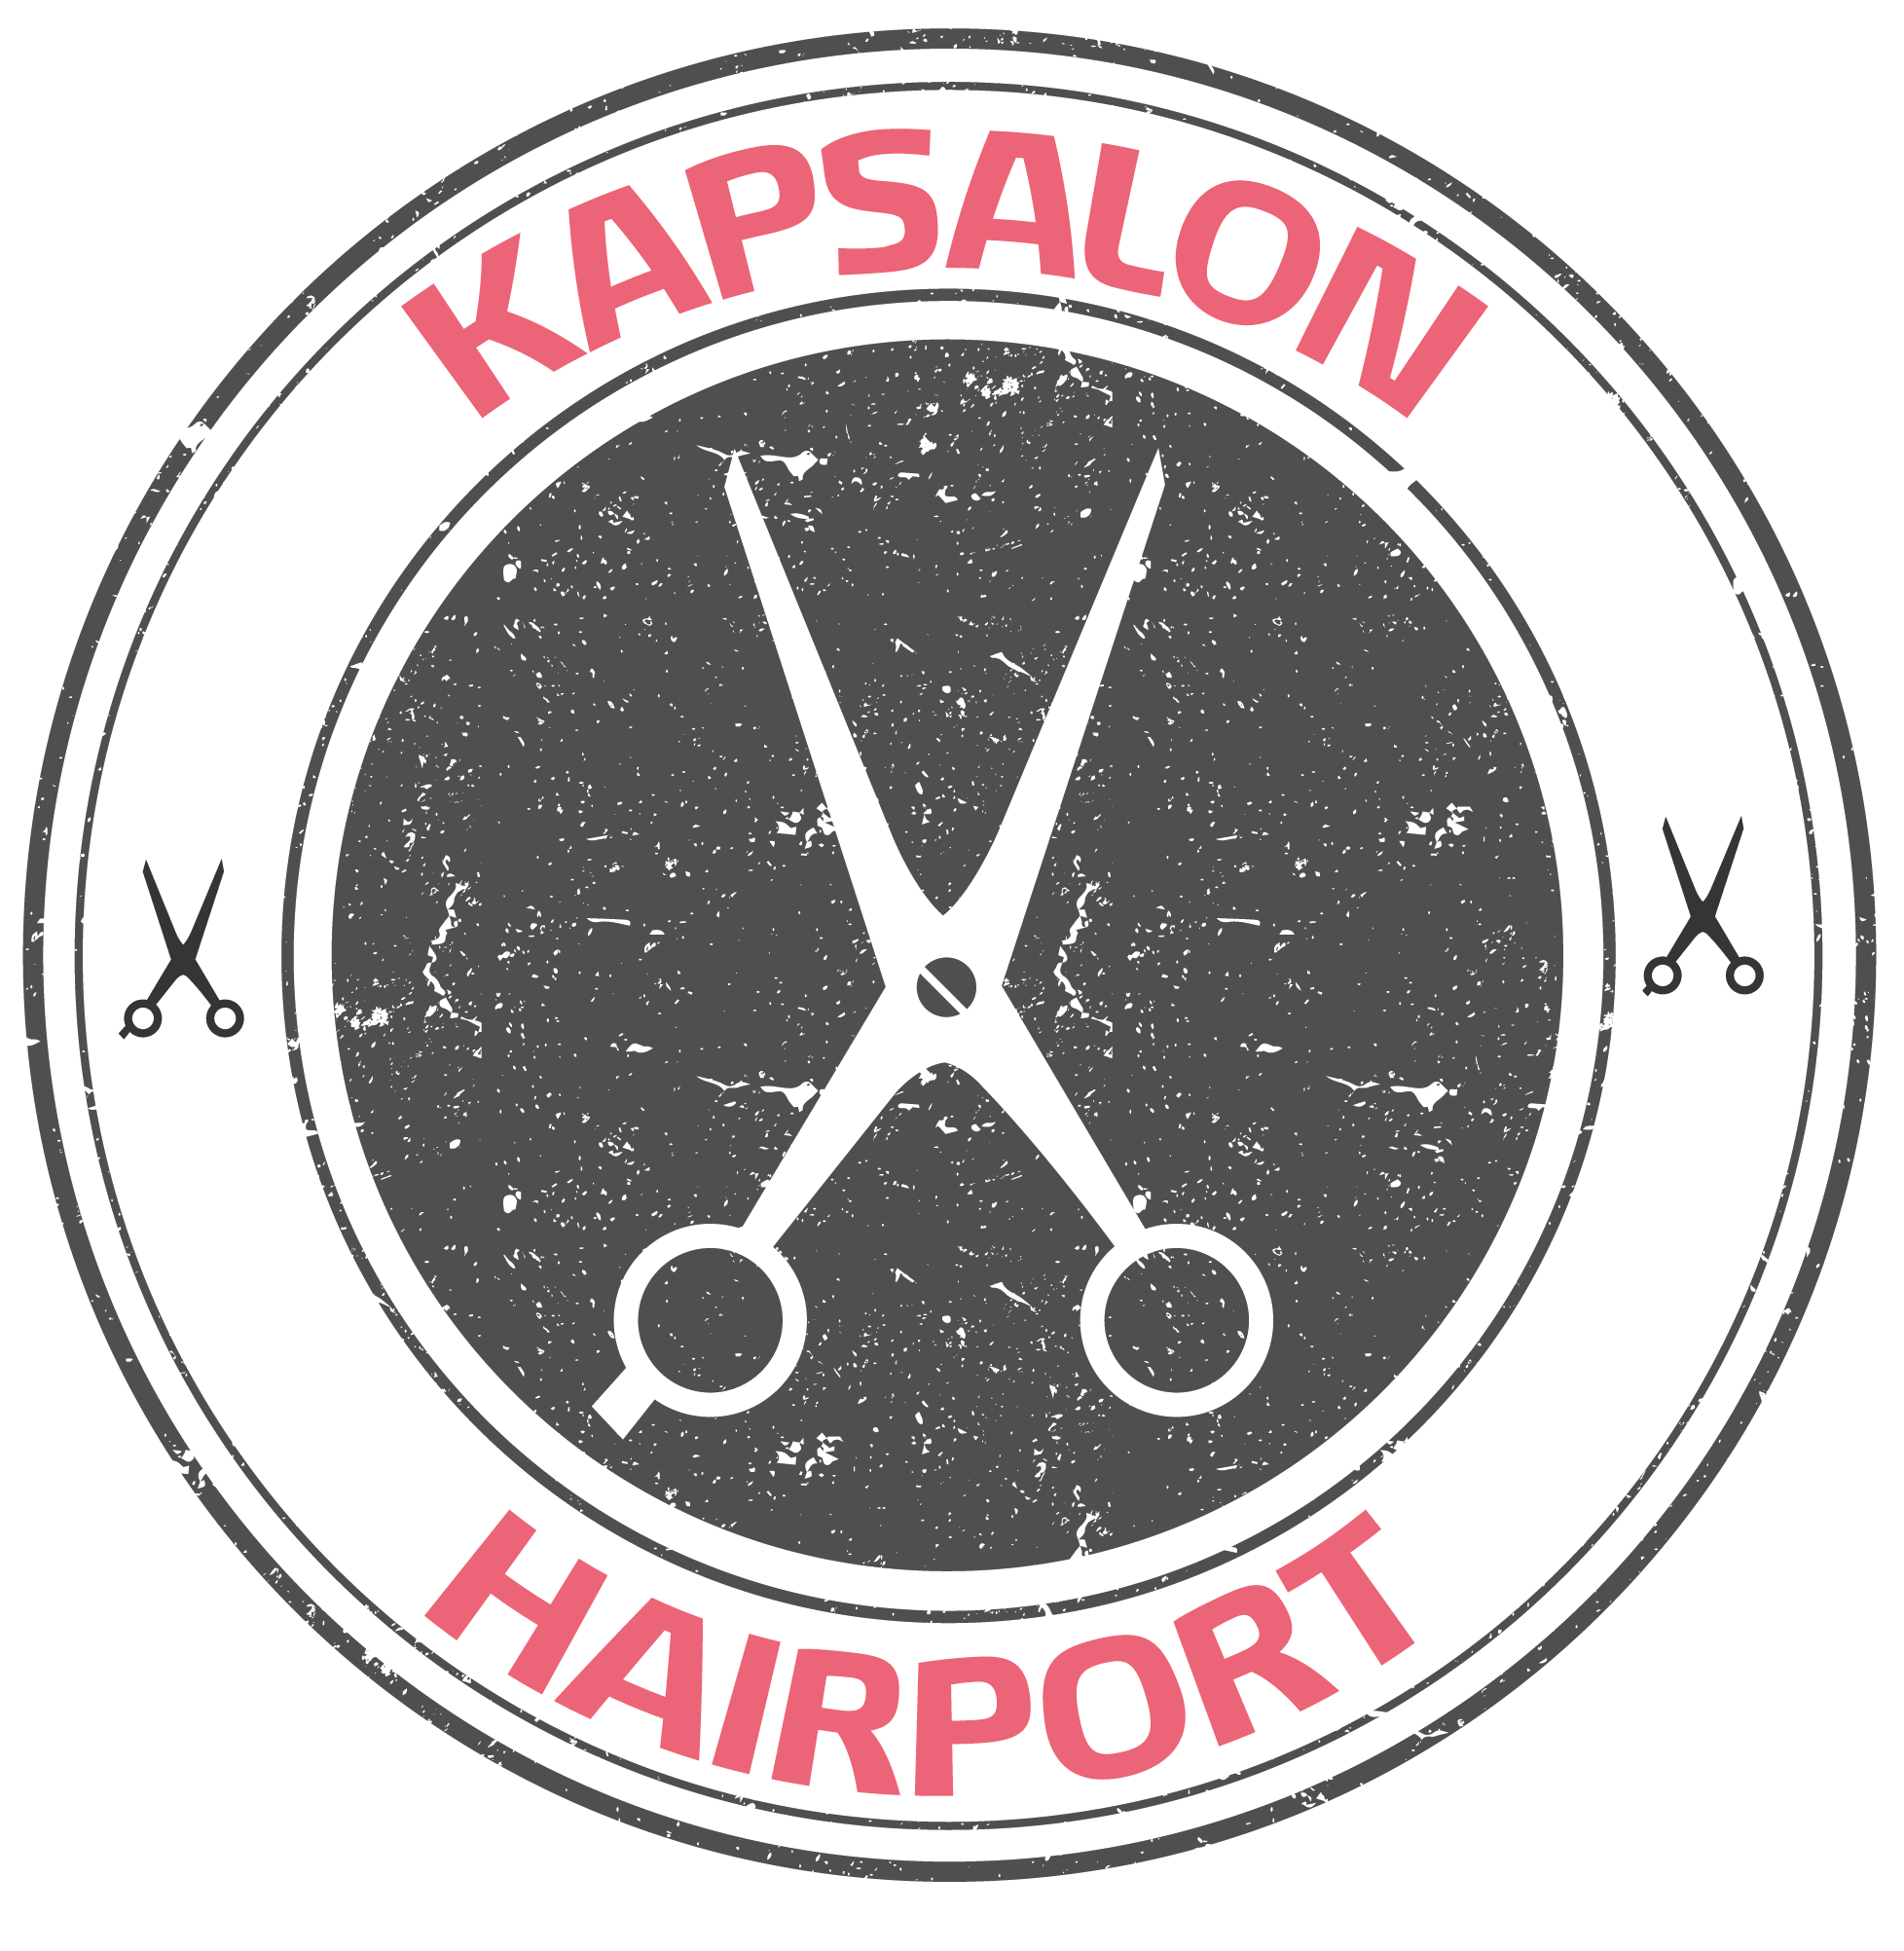 2e jaars NIV 3/4 - Kapper bij Kapsalon Hairport Goes